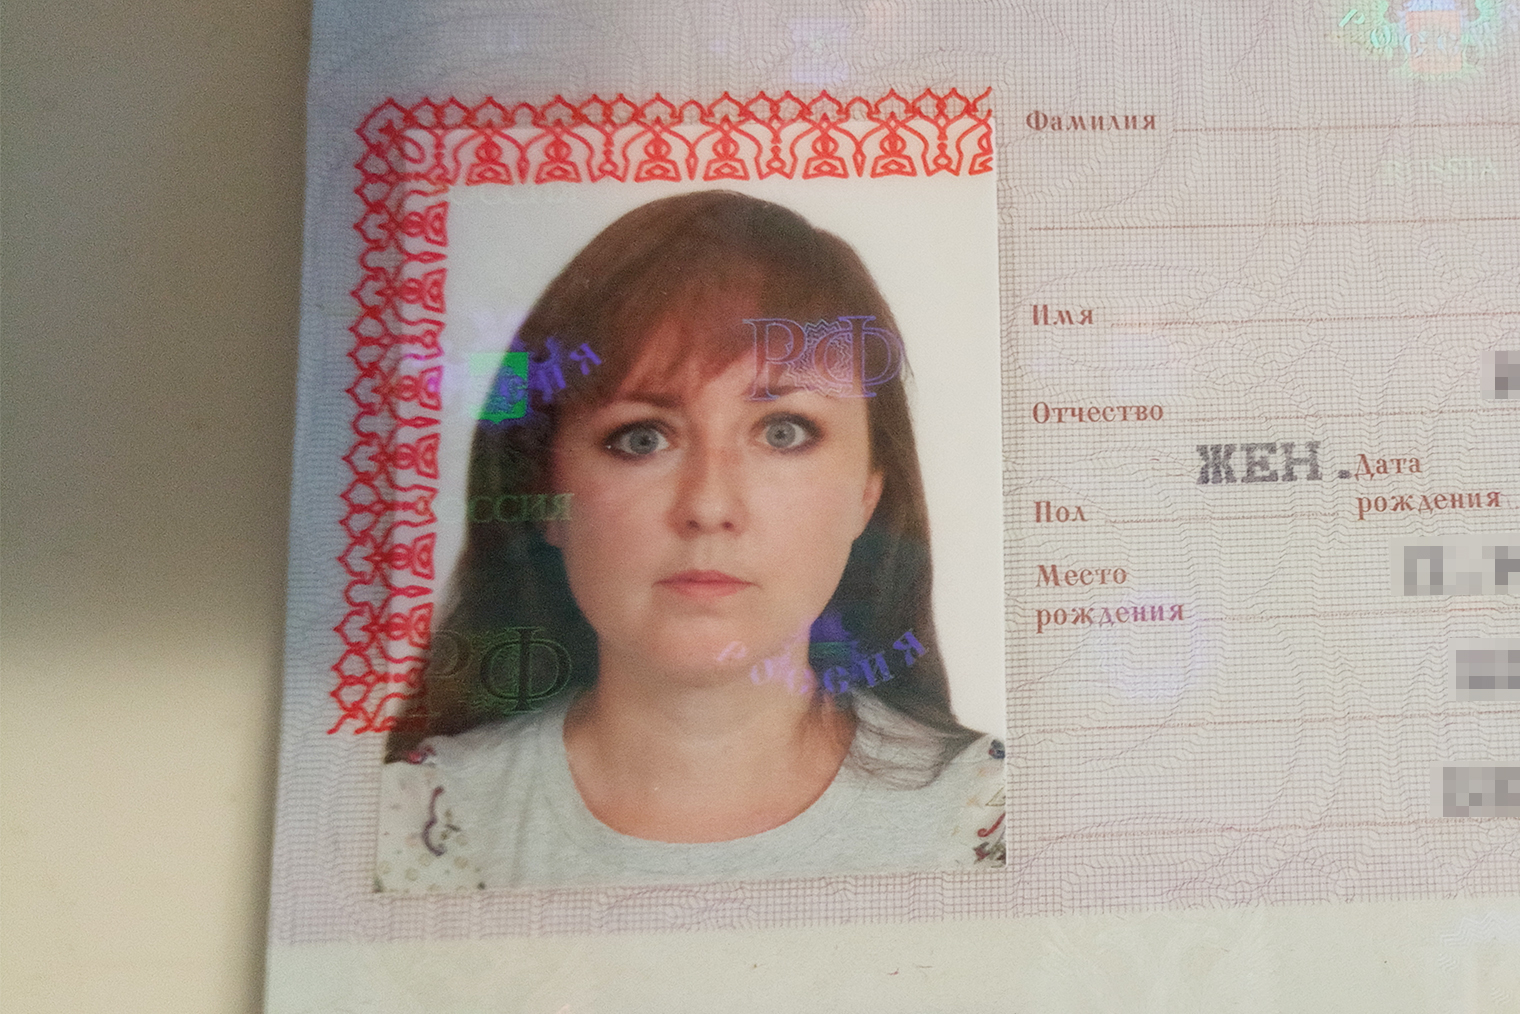 Фото в паспорте напоминает мне о болезни. Я сделала его в 2020 году. К этому моменту у меня уже заметно изменился взгляд — глаза широко раскрыты, — но тогда я этого не замечала